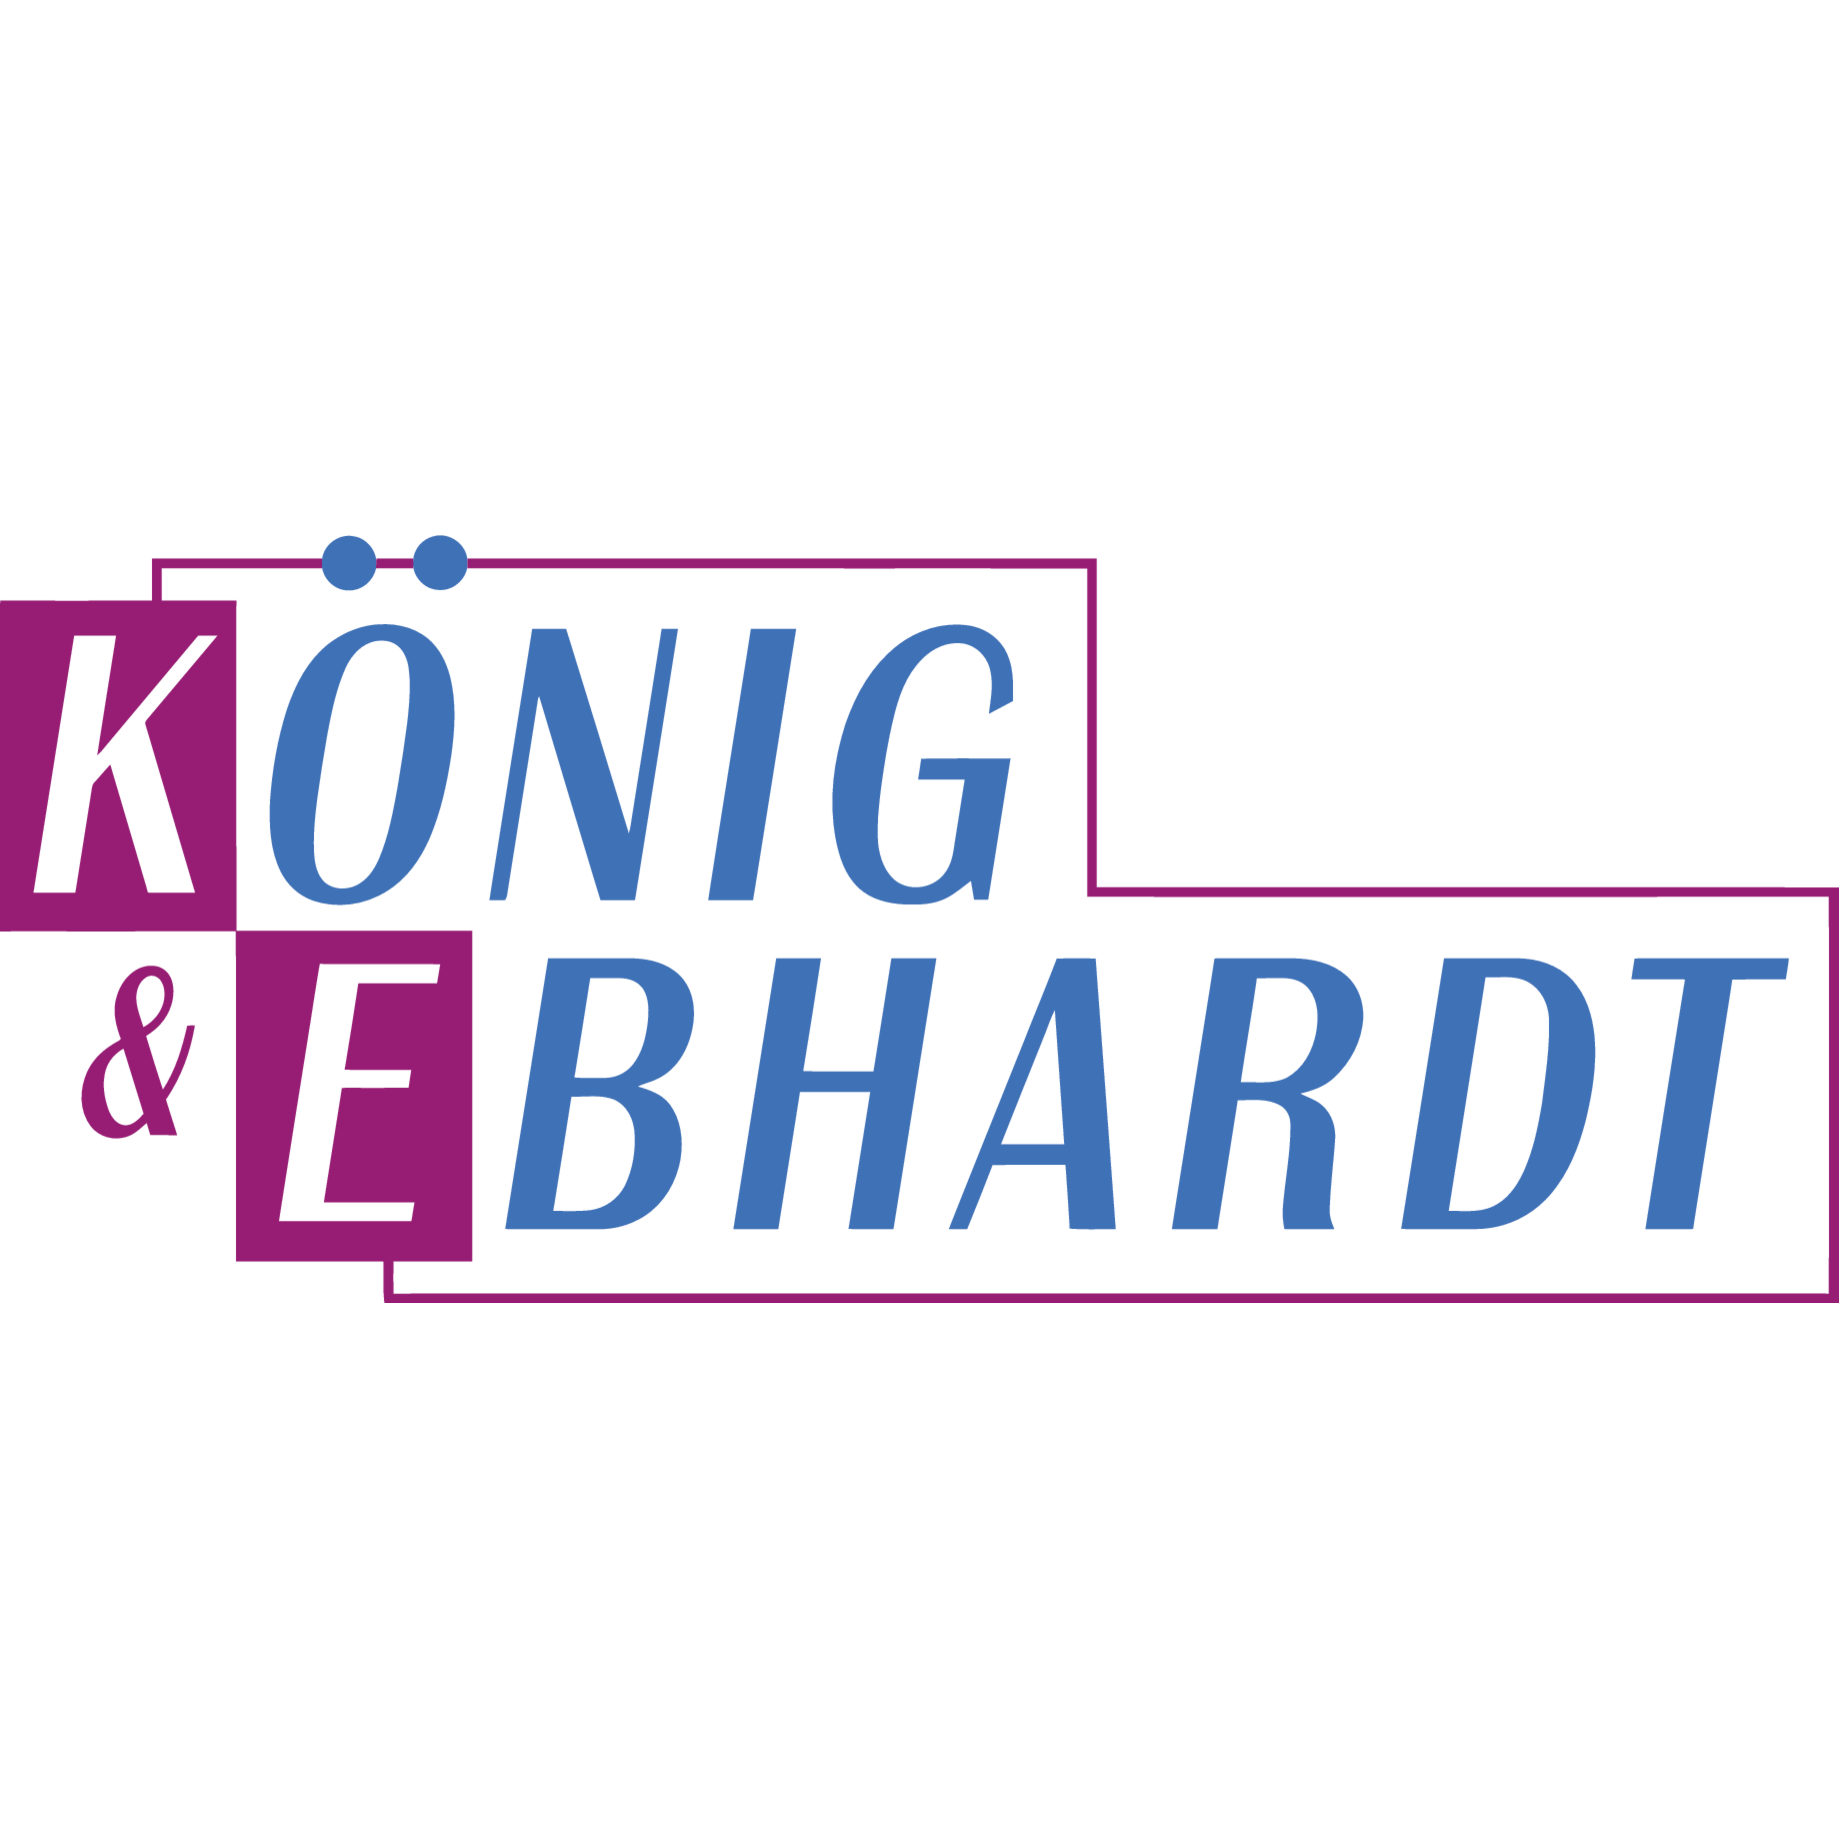 KÖNIG & EBHARDT